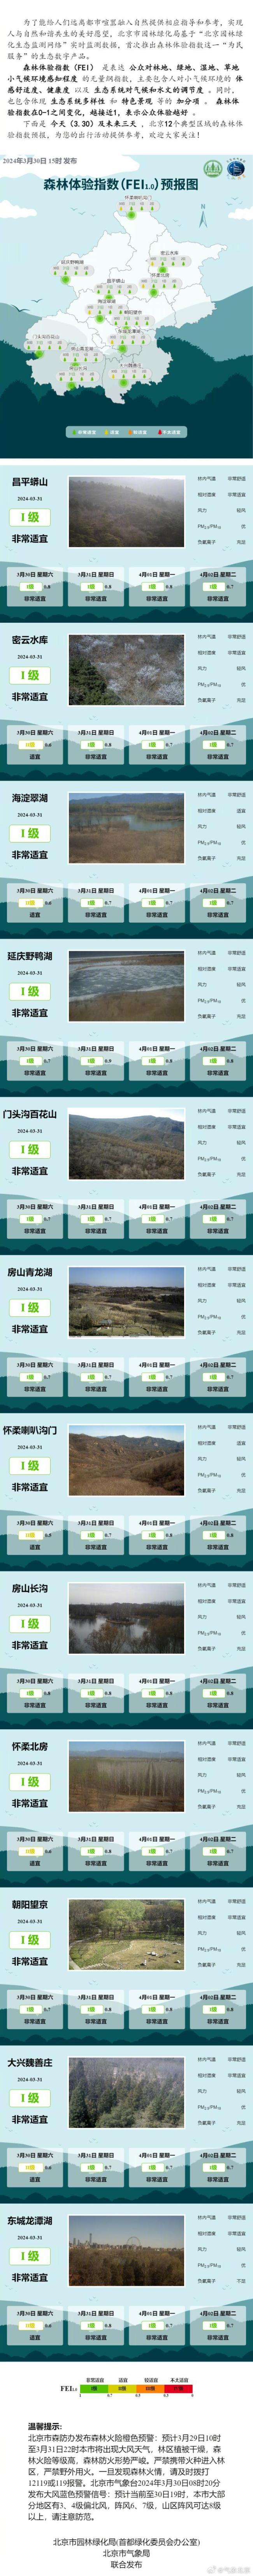 北京12个典型区域森林体验指数预报